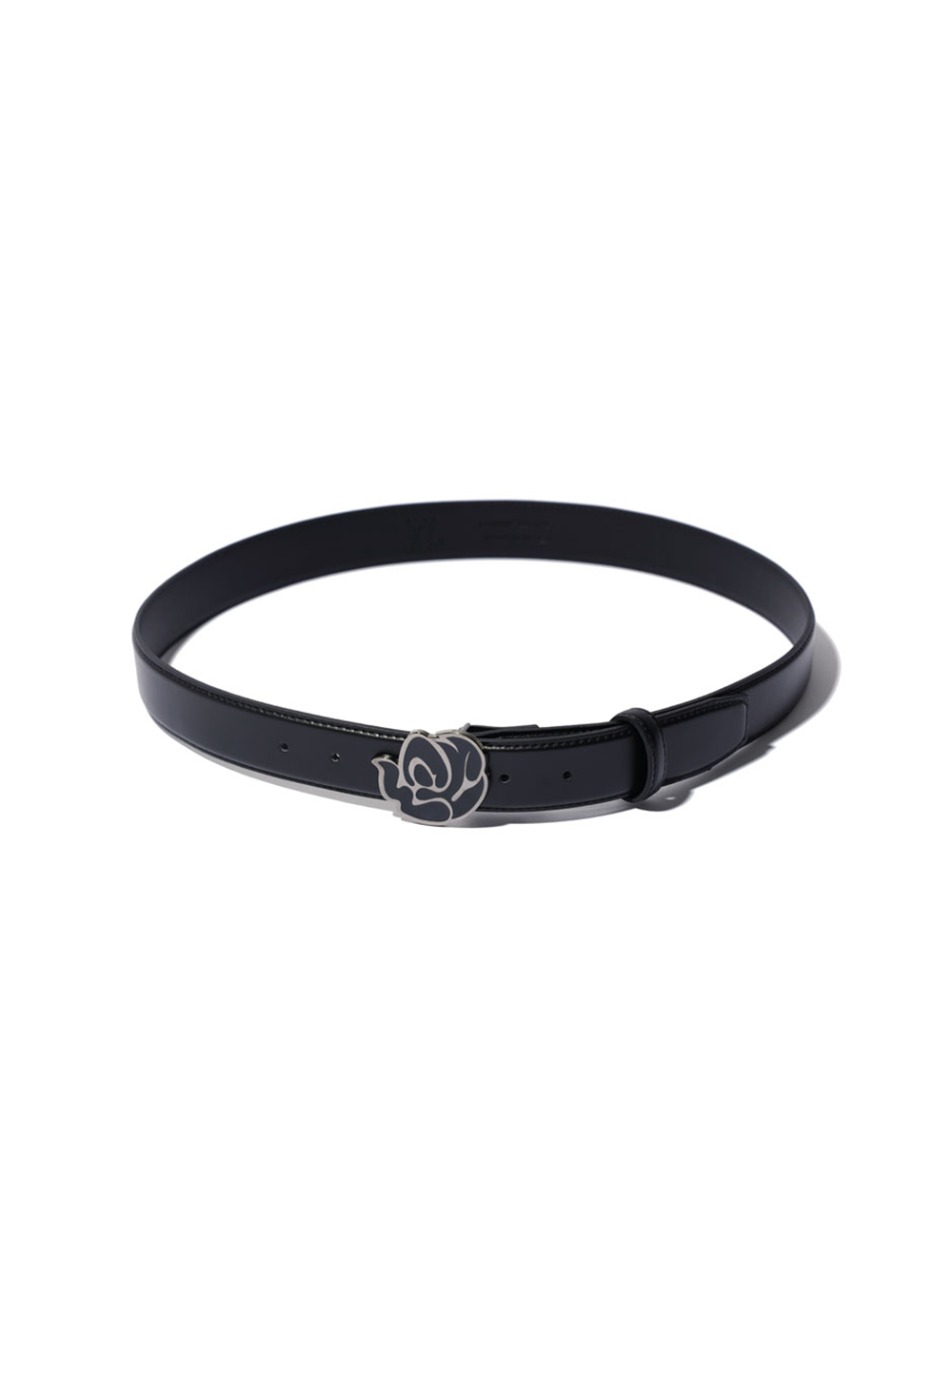 ROSE symbol leather belt - BLACK